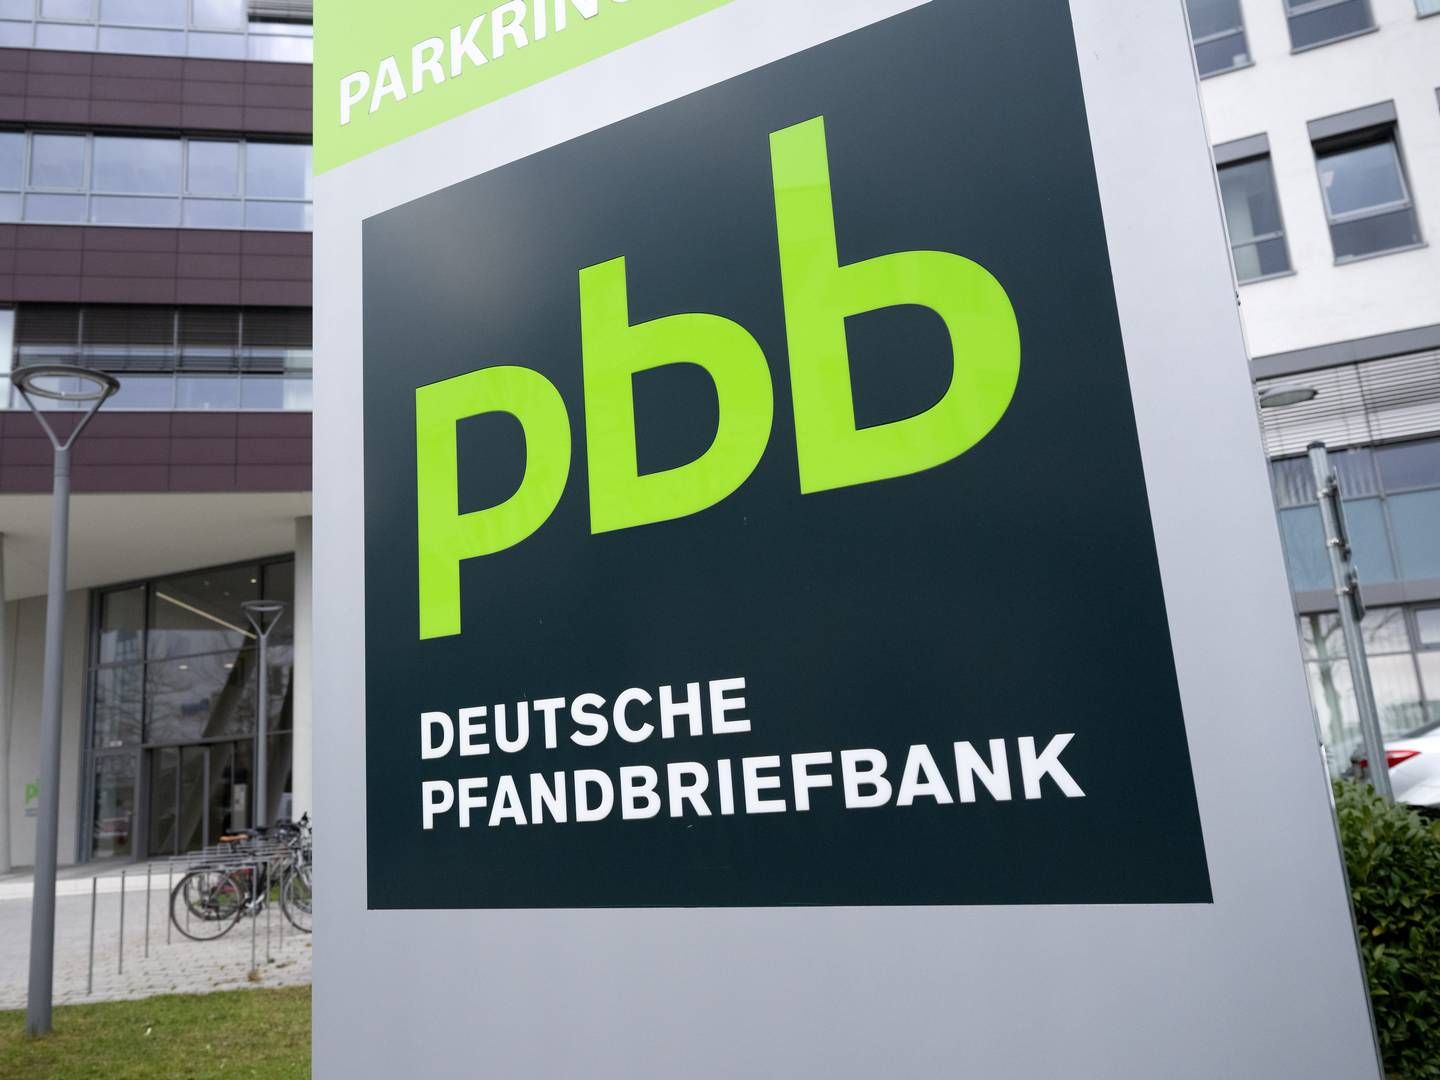 Die Pbb hat angekündigt, ihre Bilanz aktiver zu managen. Dazu trennt sie sich nun von einem Kreditportfolio. | Foto: picture alliance/dpa | Sven Hoppe